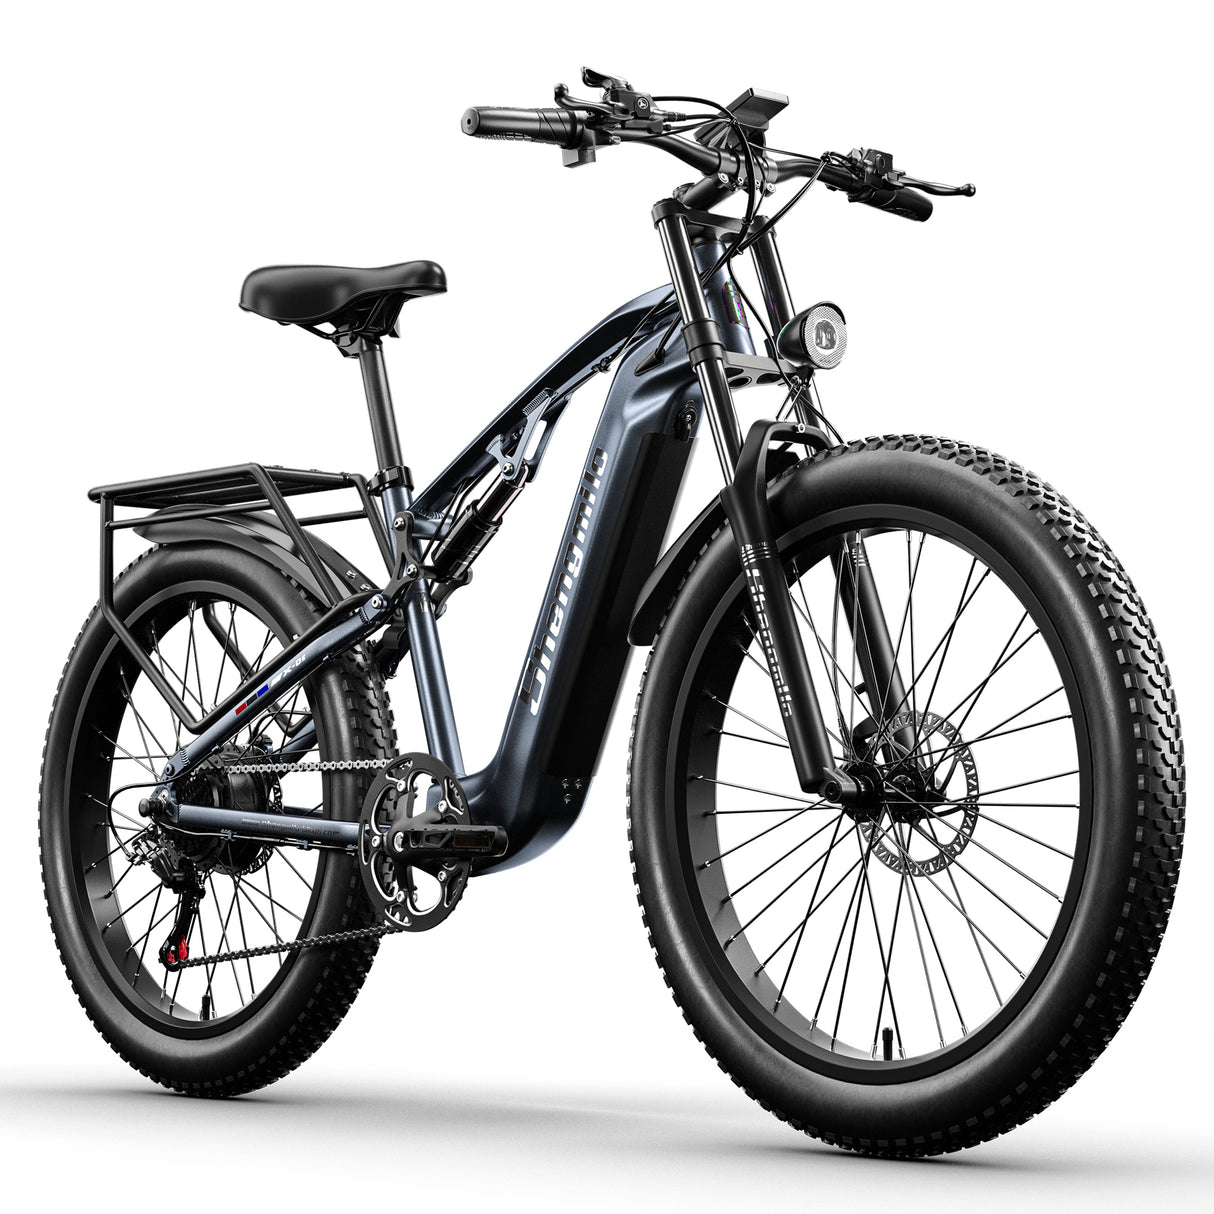 Vélo électrique MX05 de Shengmilo